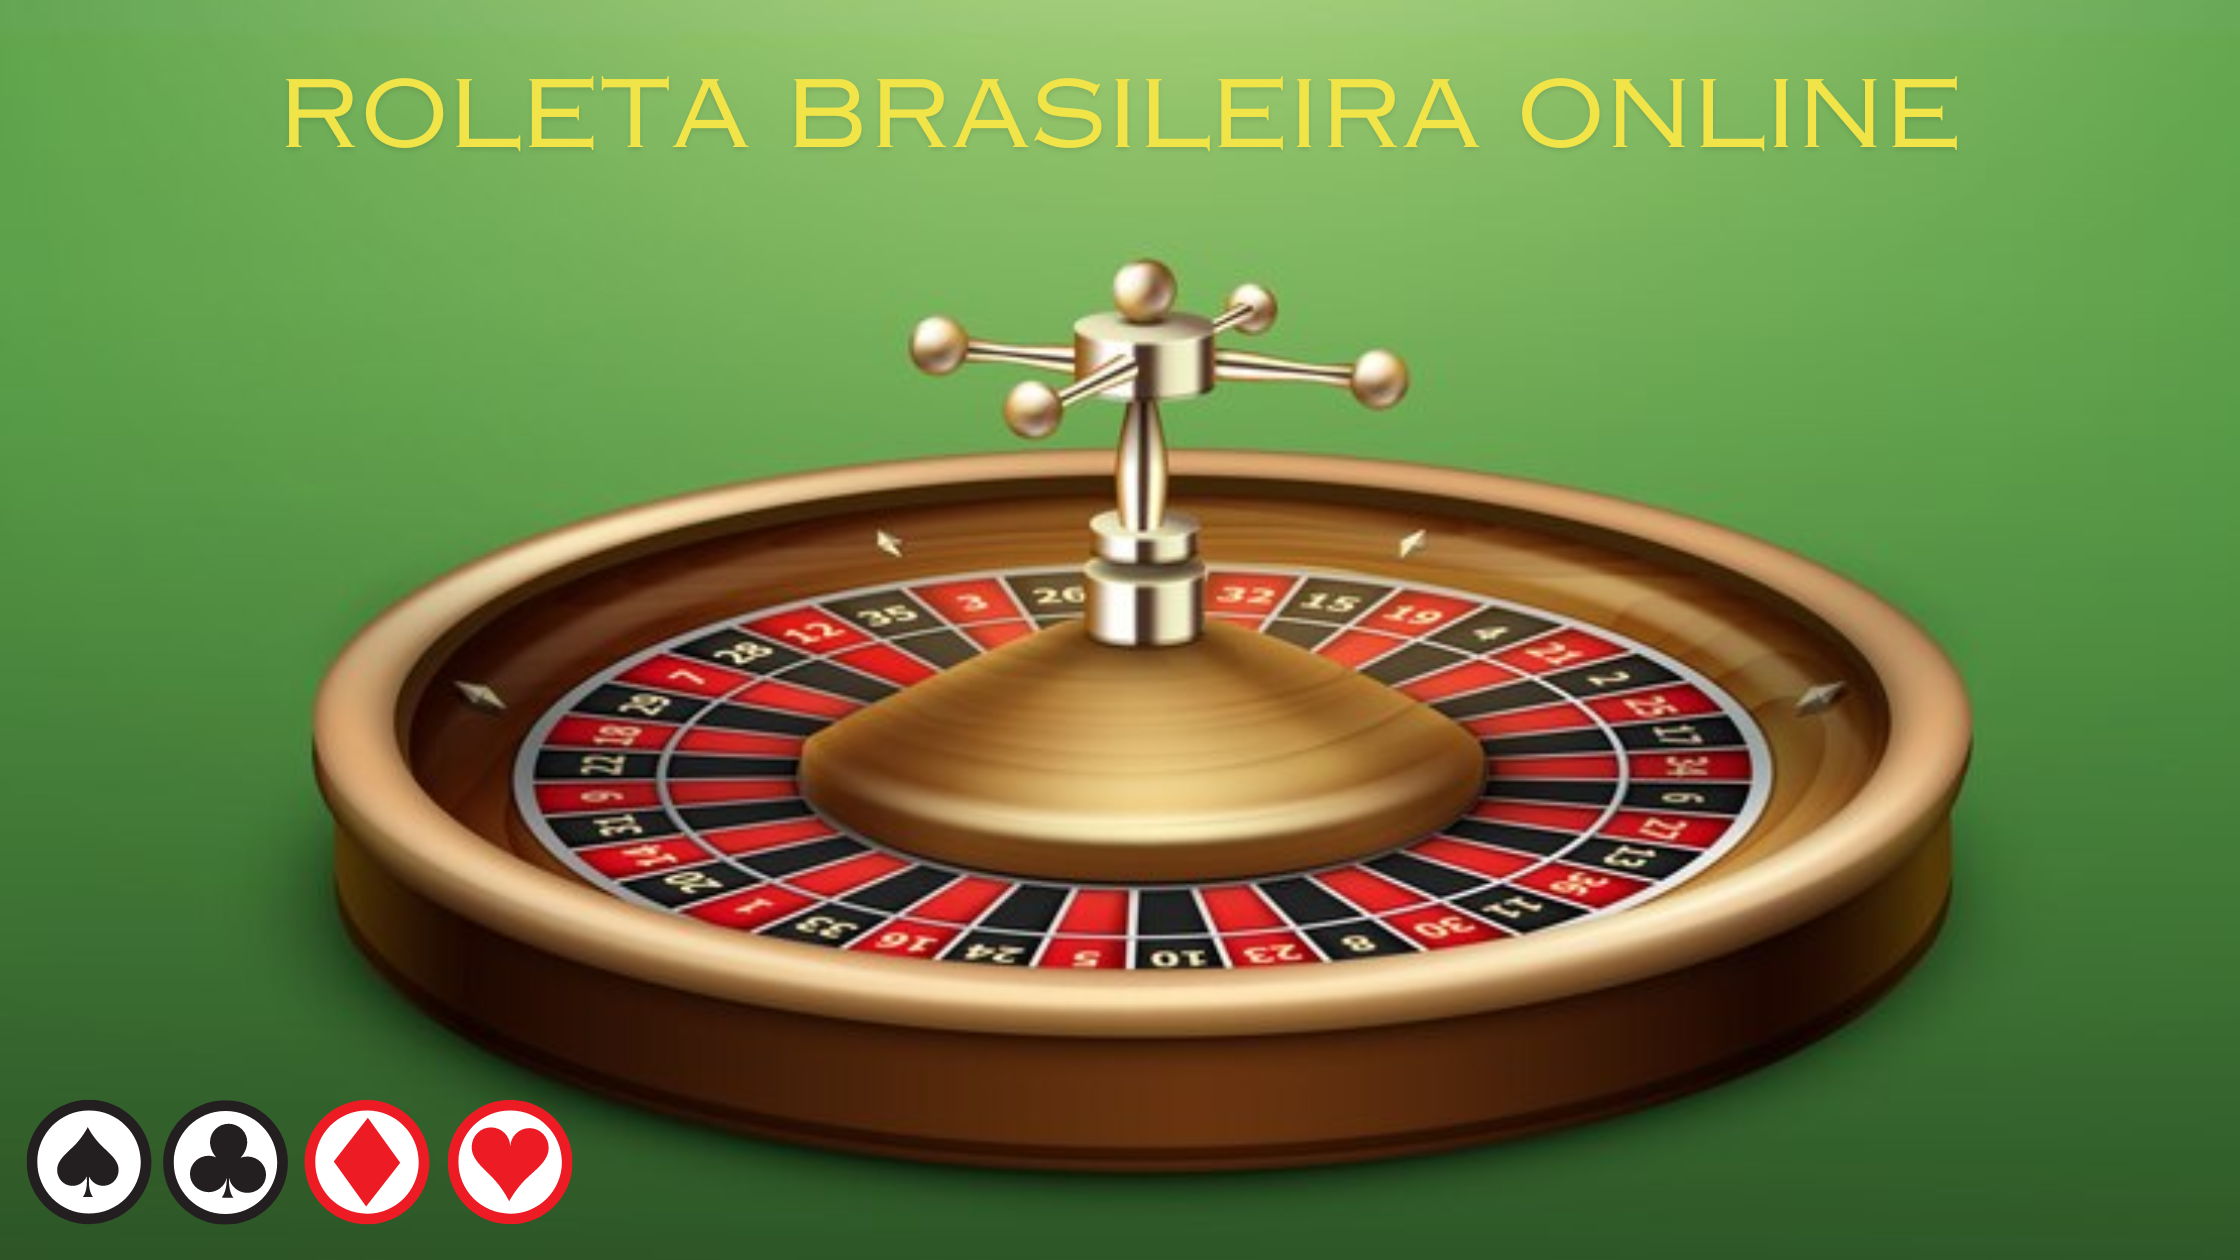 Experimente a emoção da roleta brasileira online - Jogue o melhor jogo de casino de roleta - TrustCasino.pro